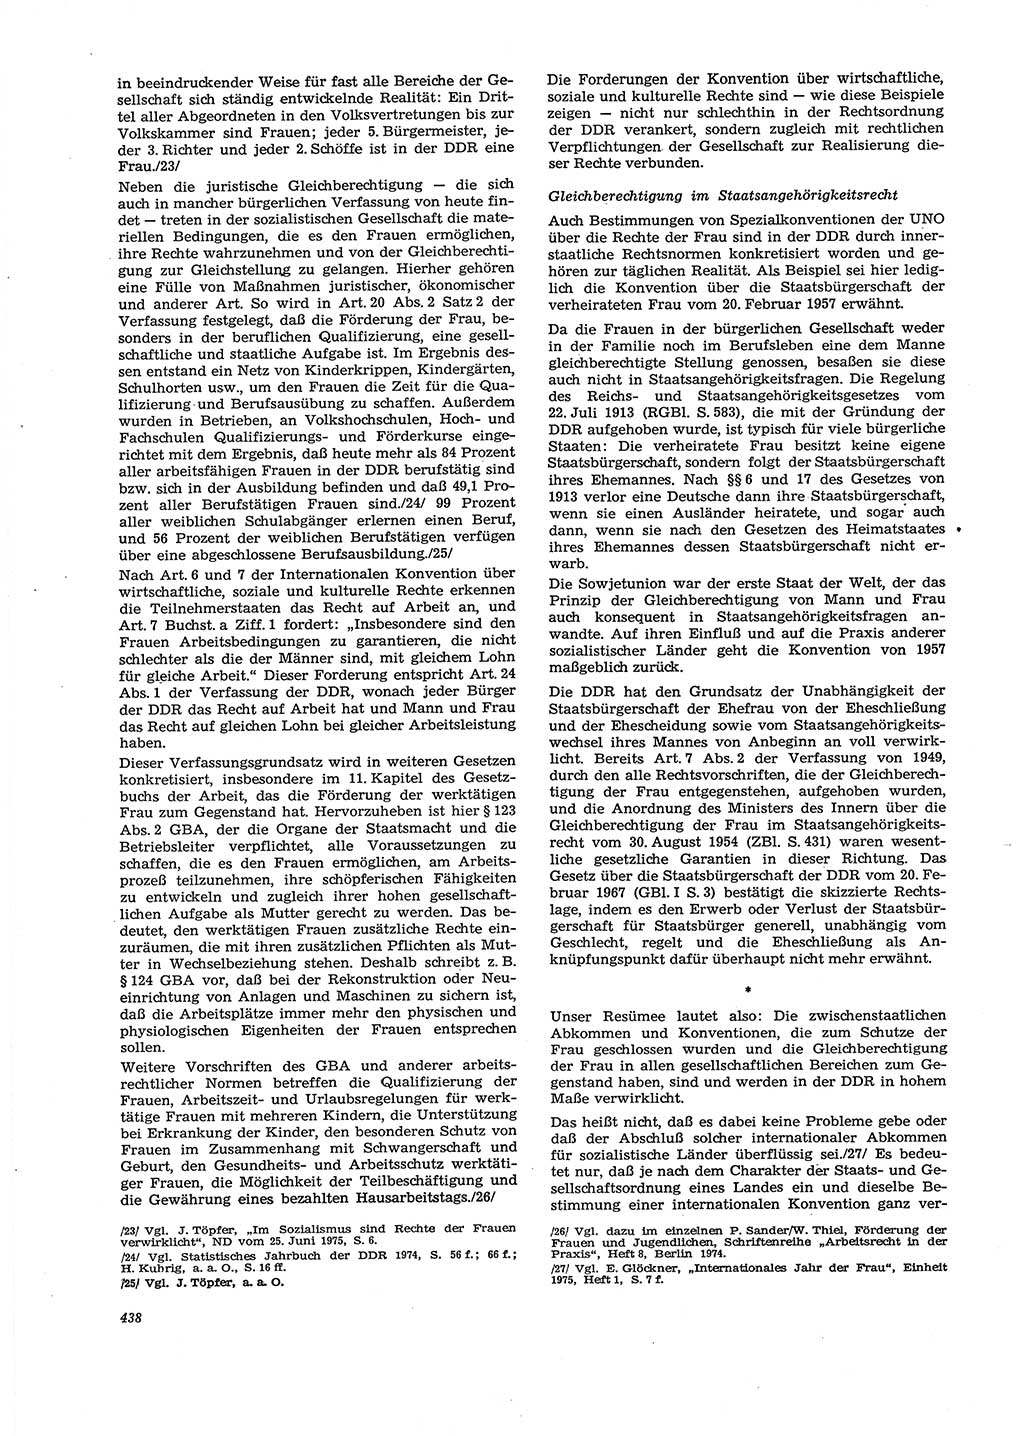 Neue Justiz (NJ), Zeitschrift für Recht und Rechtswissenschaft [Deutsche Demokratische Republik (DDR)], 29. Jahrgang 1975, Seite 438 (NJ DDR 1975, S. 438)